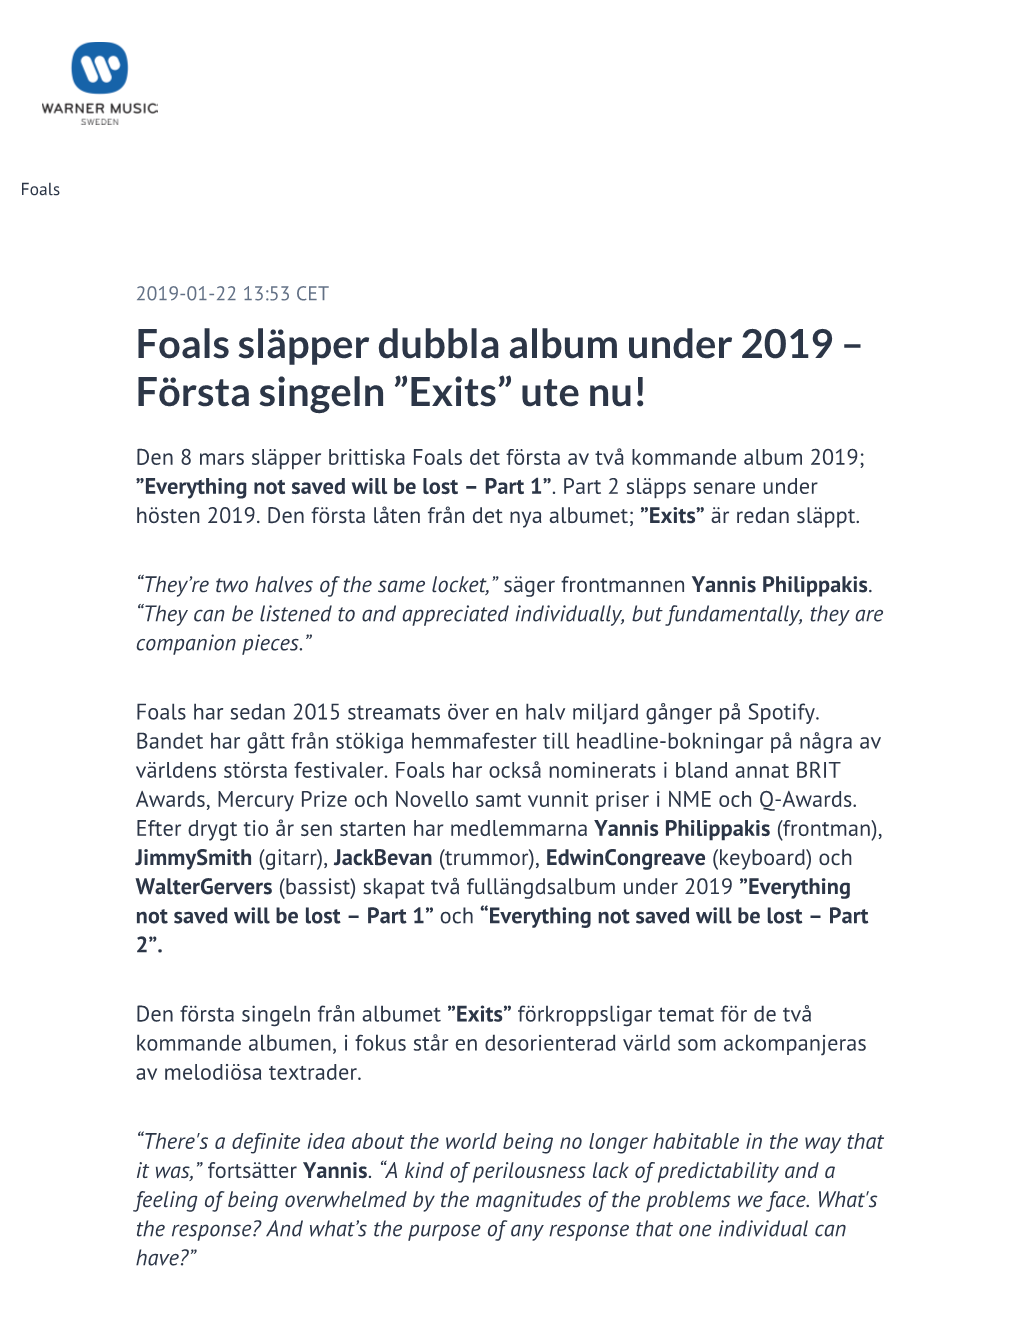 Foals Släpper Dubbla Album Under 2019 – Första Singeln ”Exits” Ute Nu!